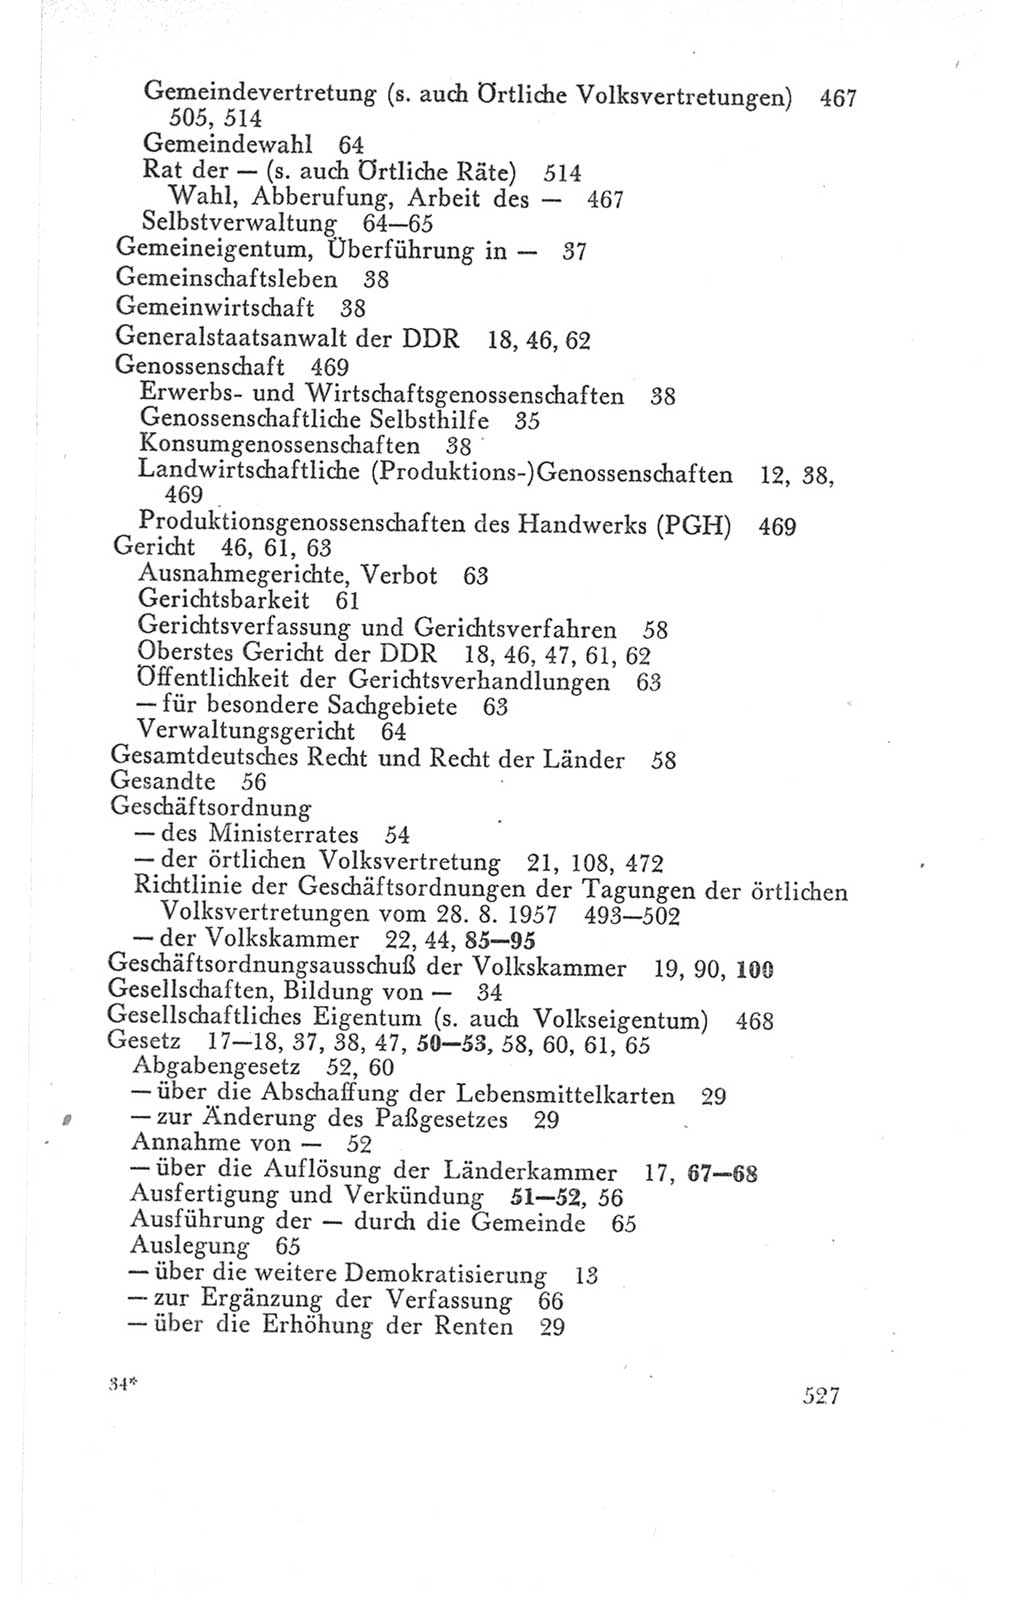 Handbuch der Volkskammer (VK) der Deutschen Demokratischen Republik (DDR), 3. Wahlperiode 1958-1963, Seite 527 (Hdb. VK. DDR 3. WP. 1958-1963, S. 527)